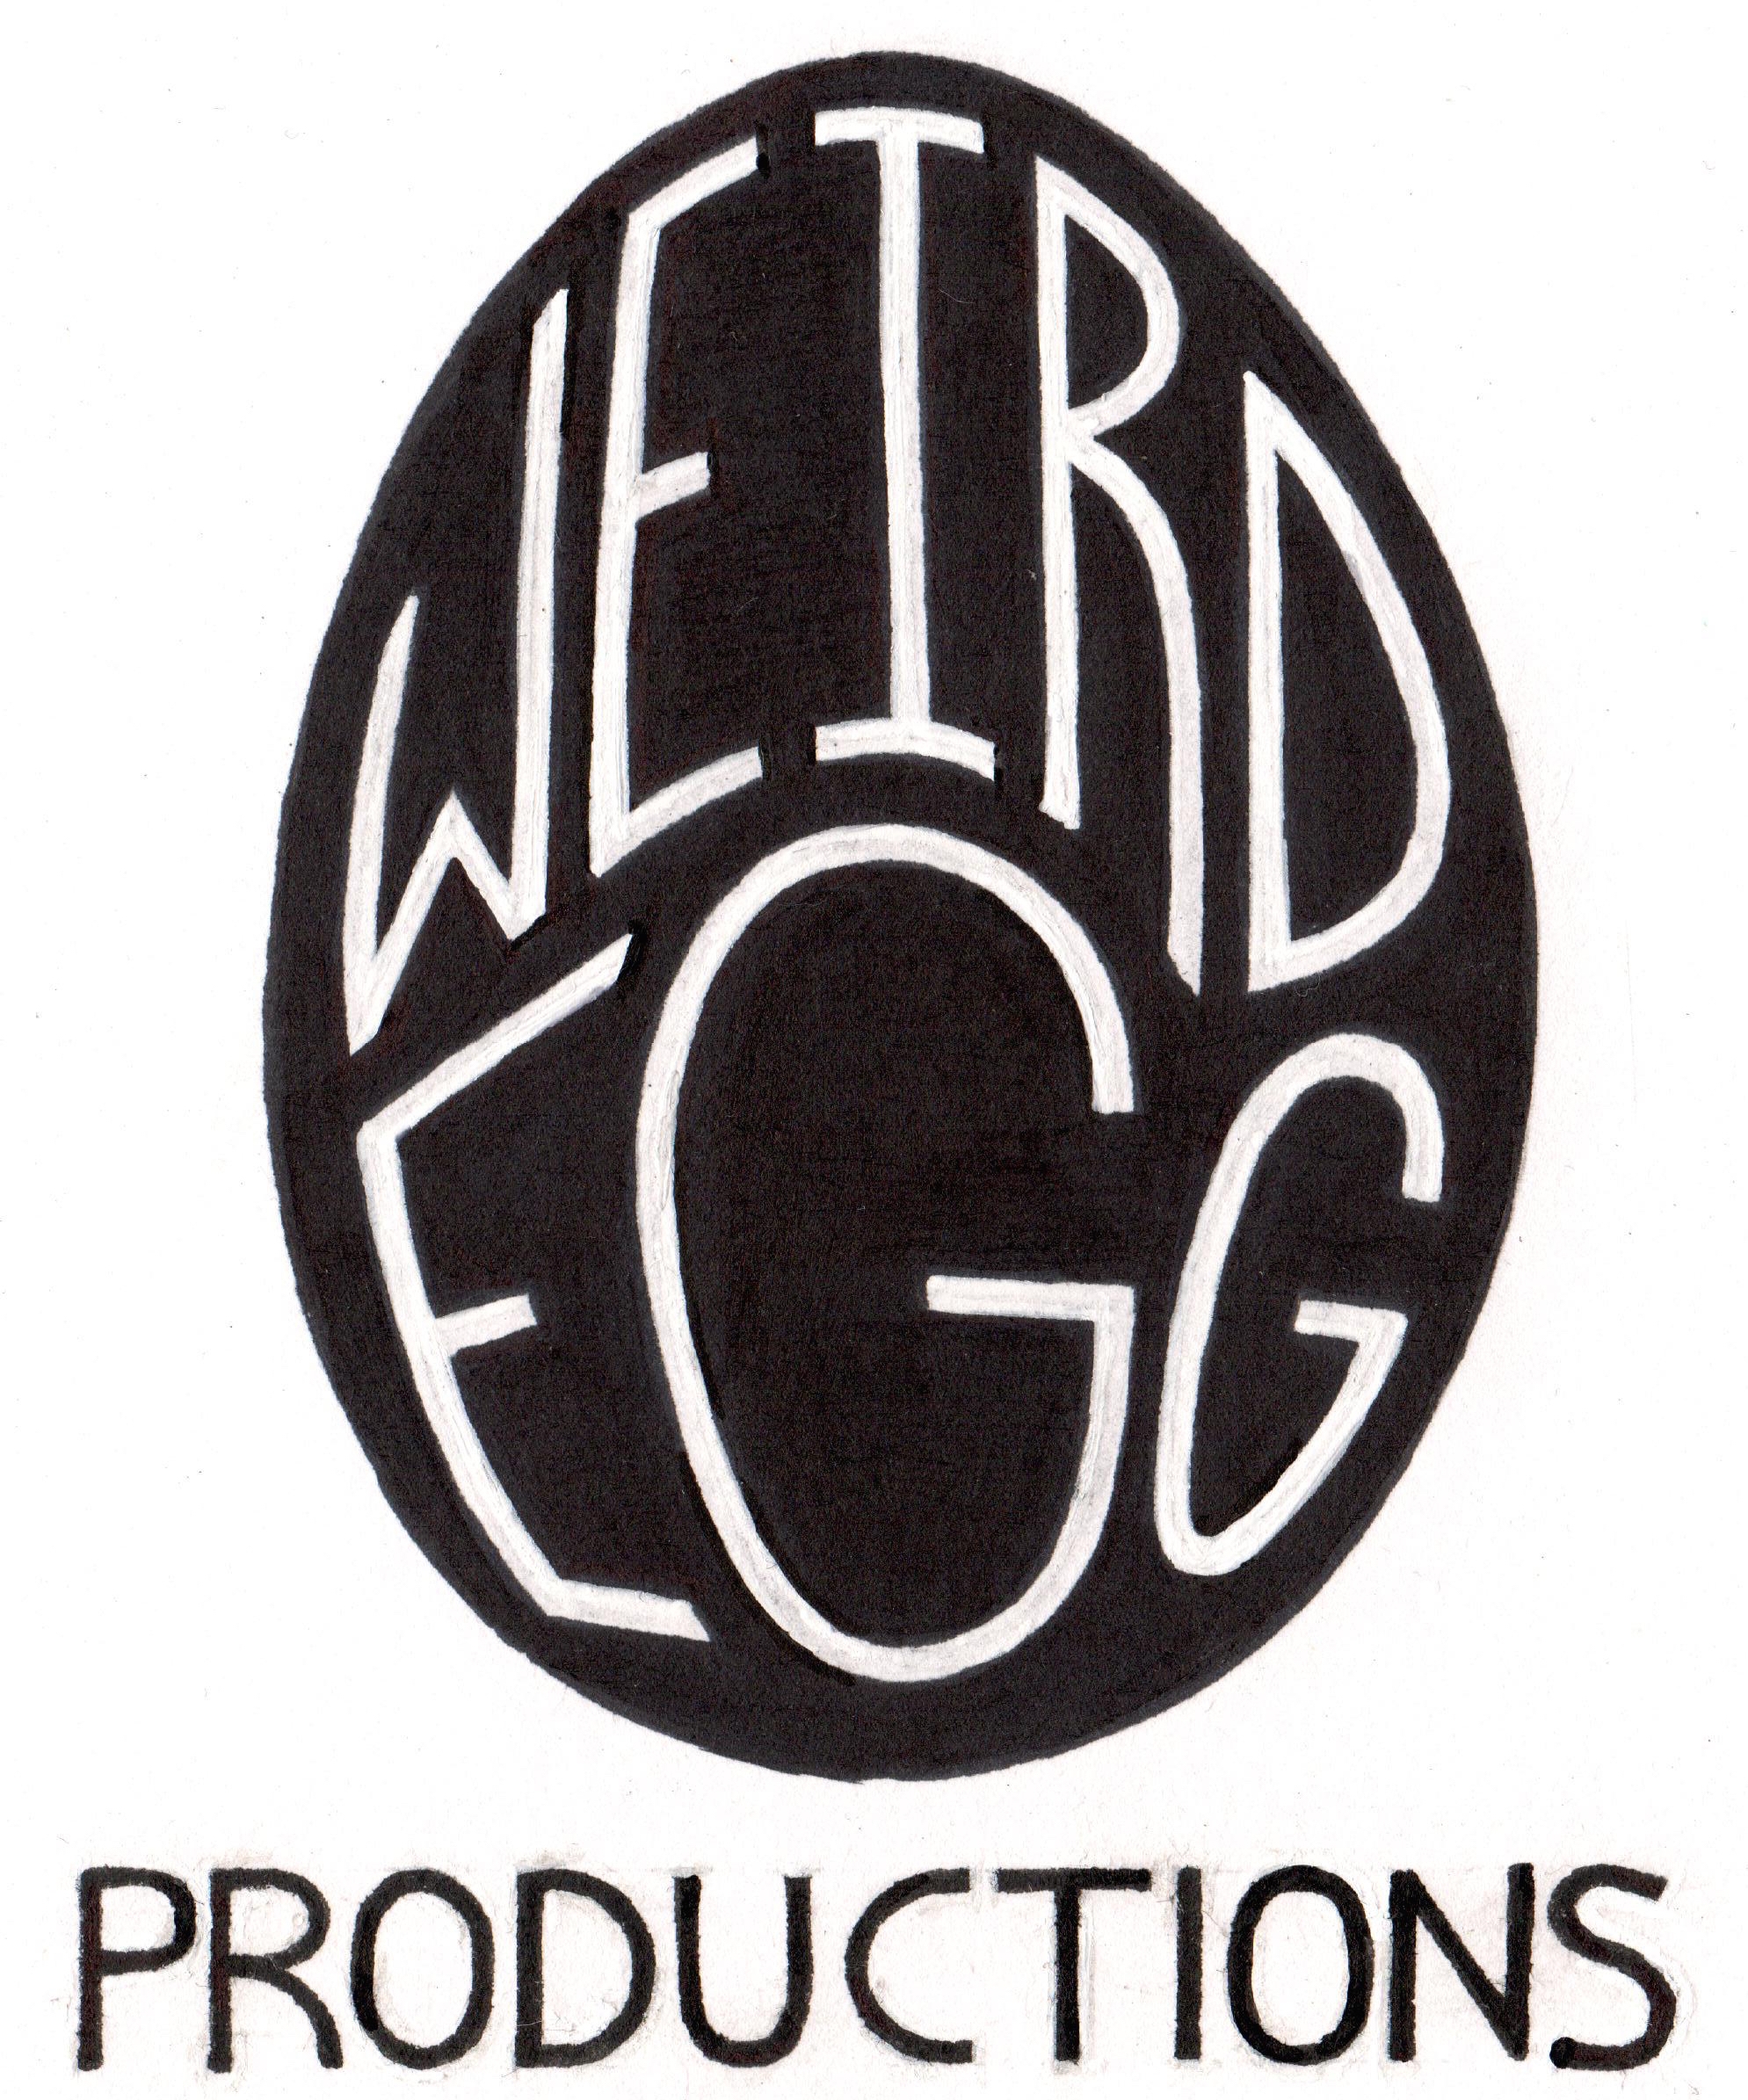 Weird Egg Productions